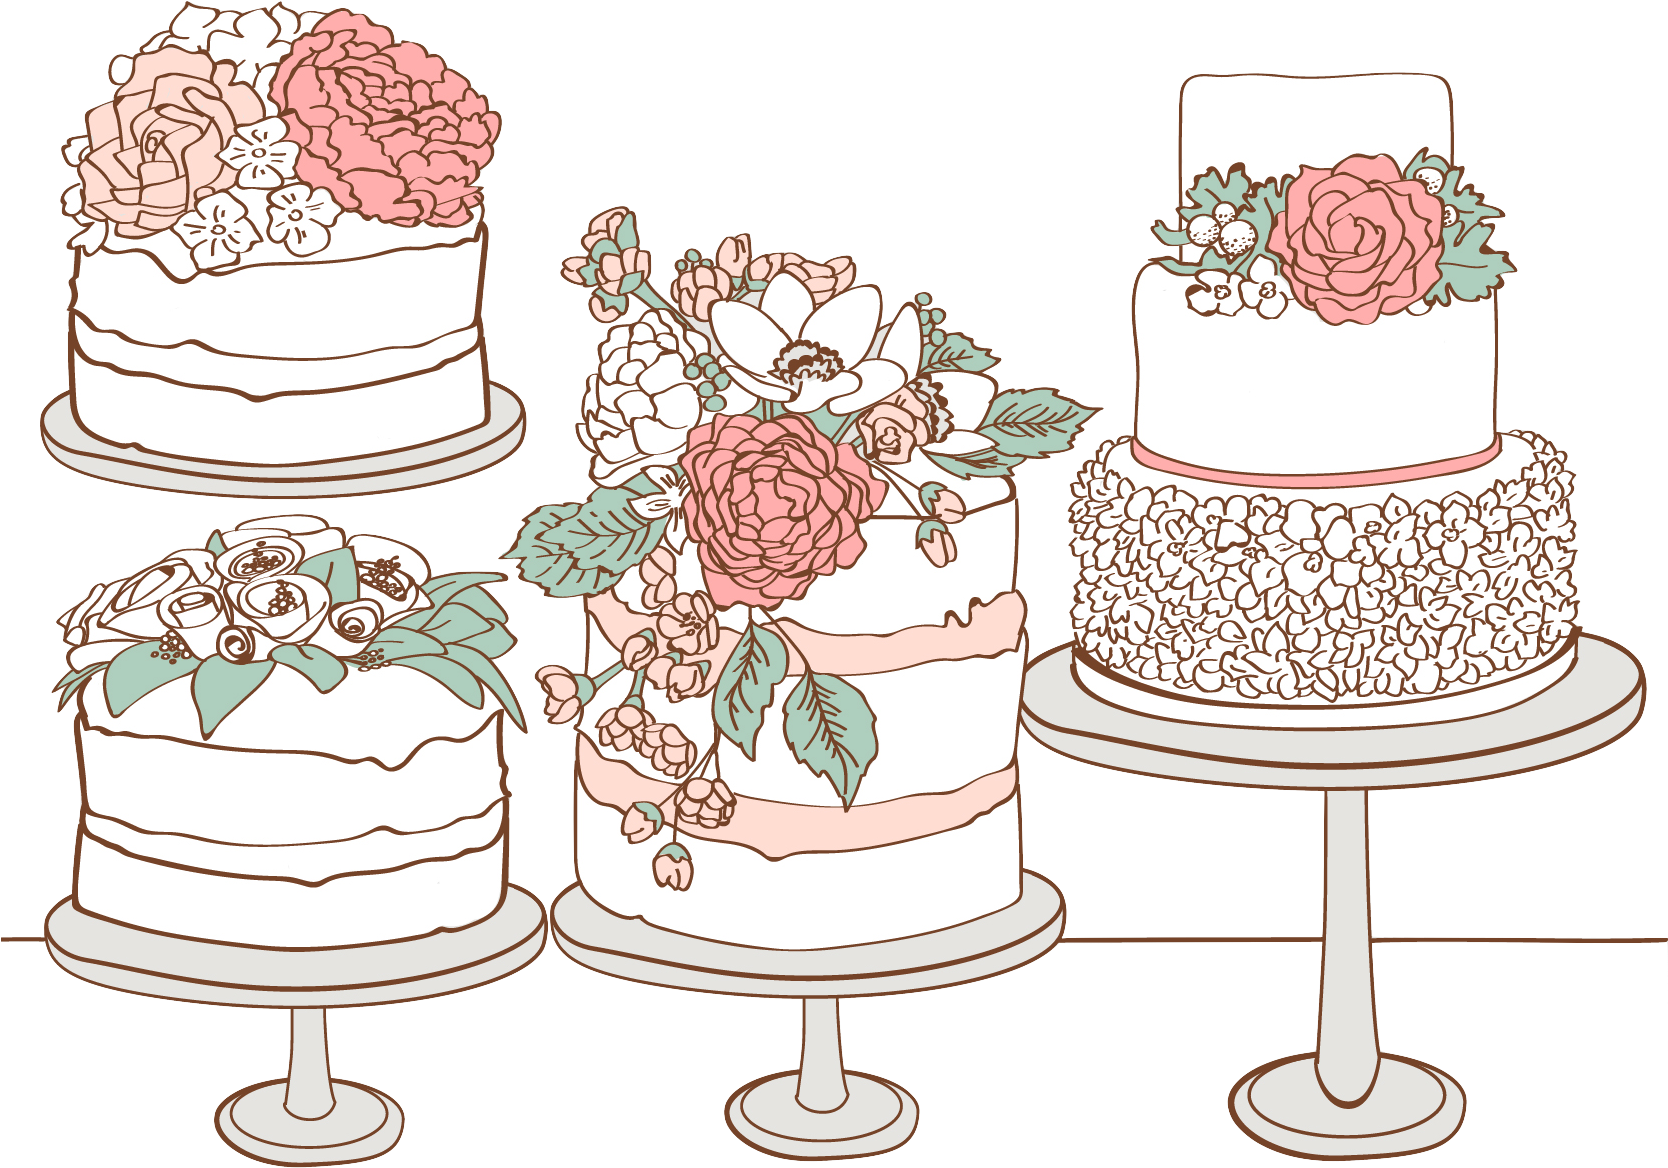 Custom Cakes & Cupcakes - Wedding Cake (1667x1667)